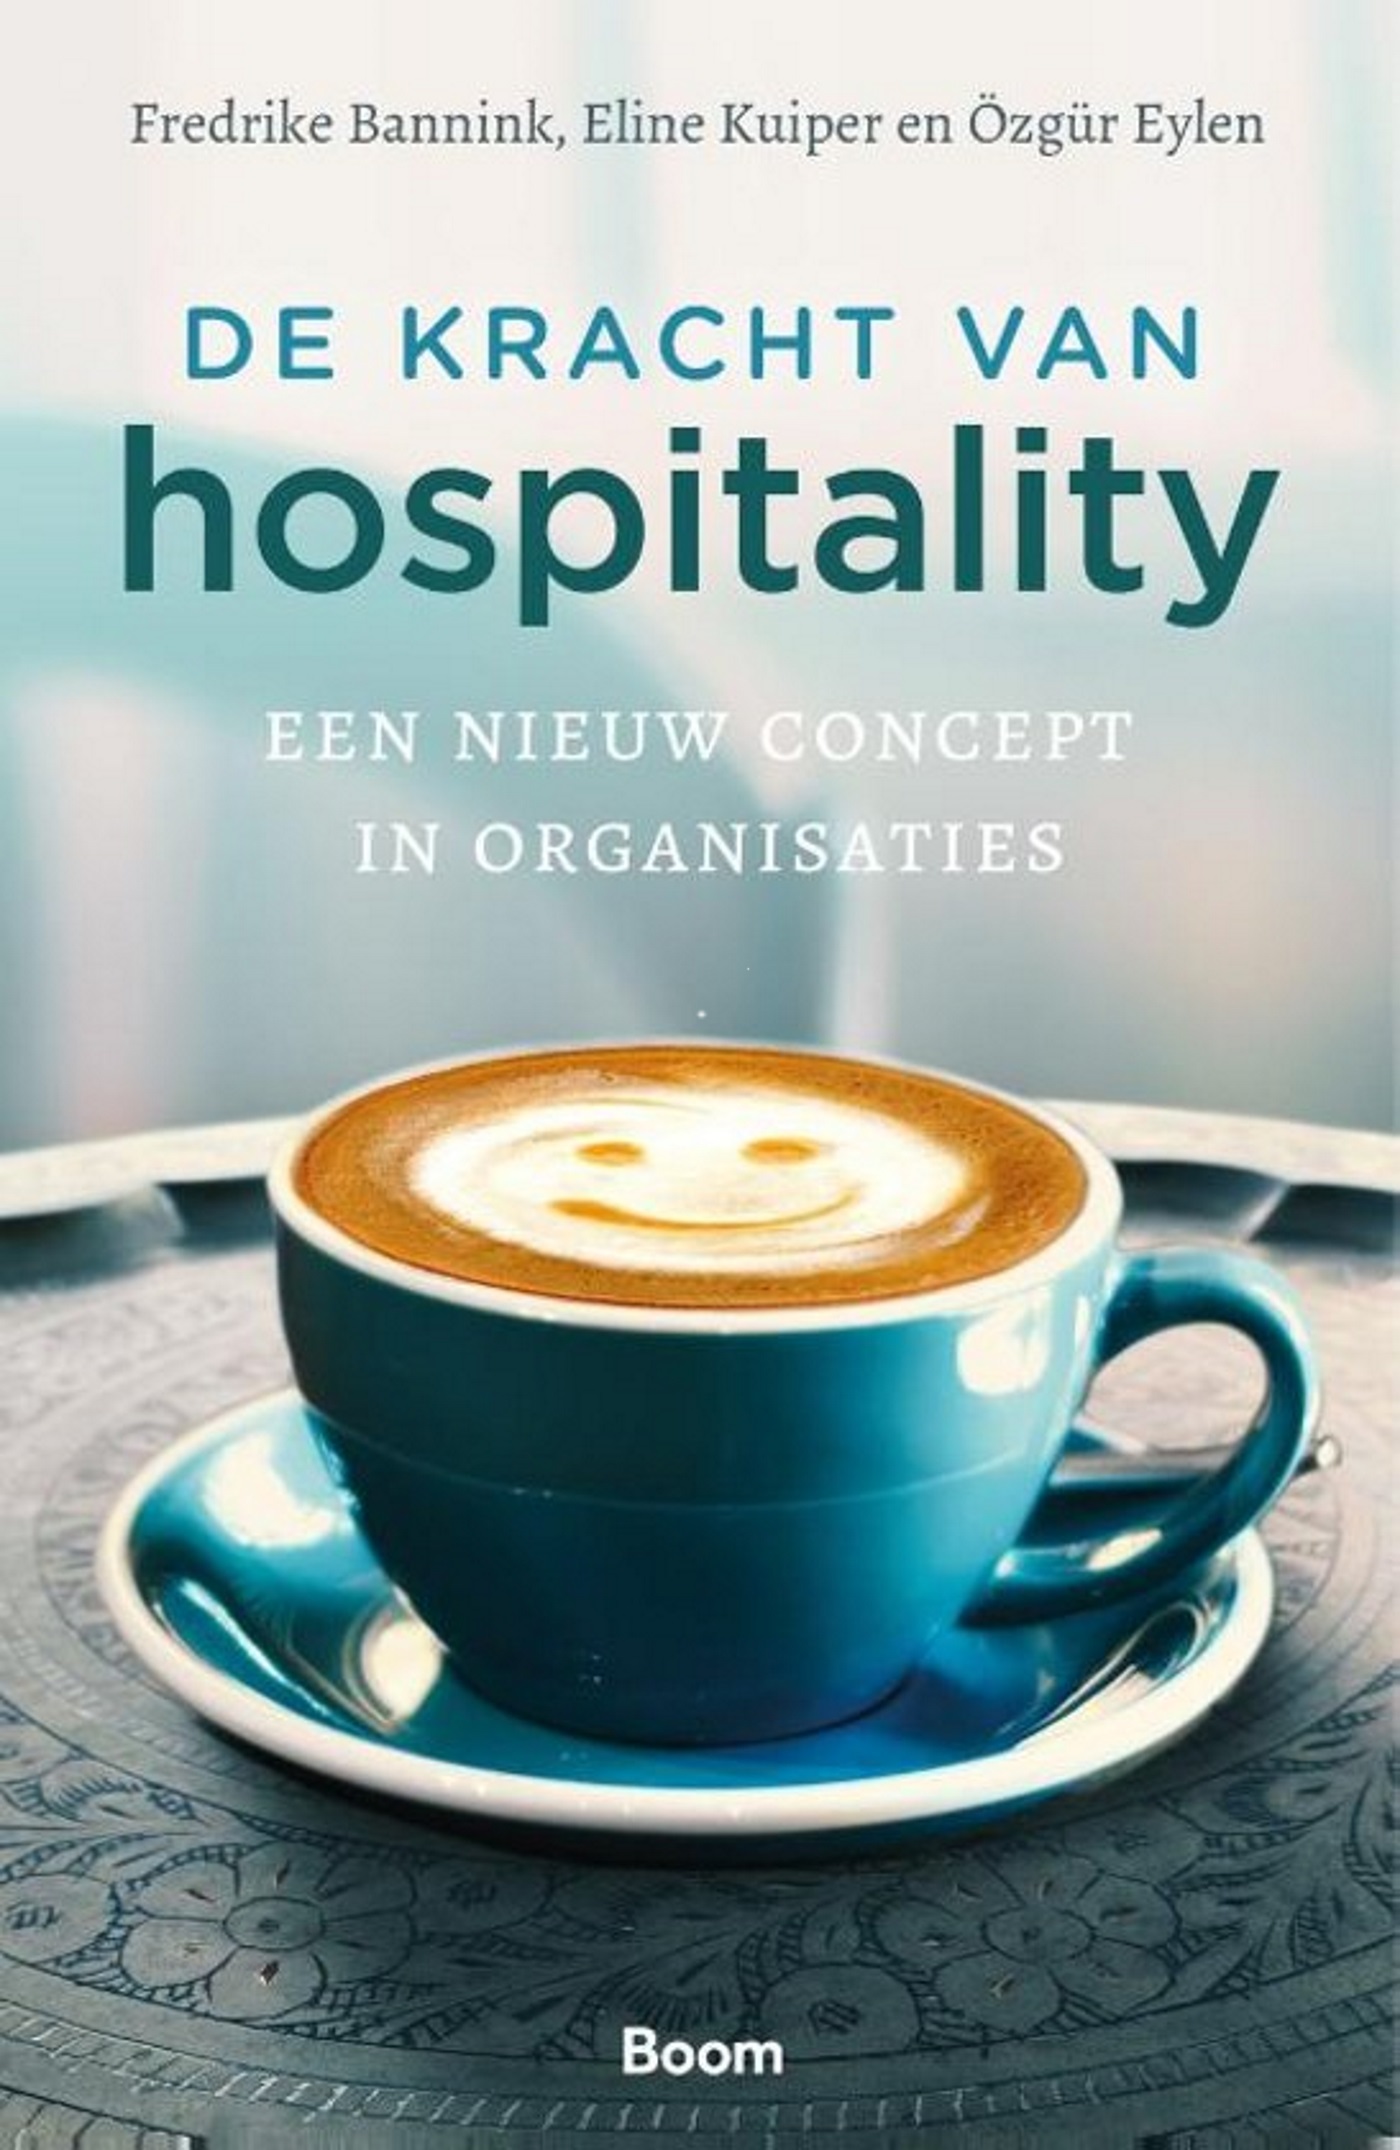 De kracht van hospitality (Ebook)